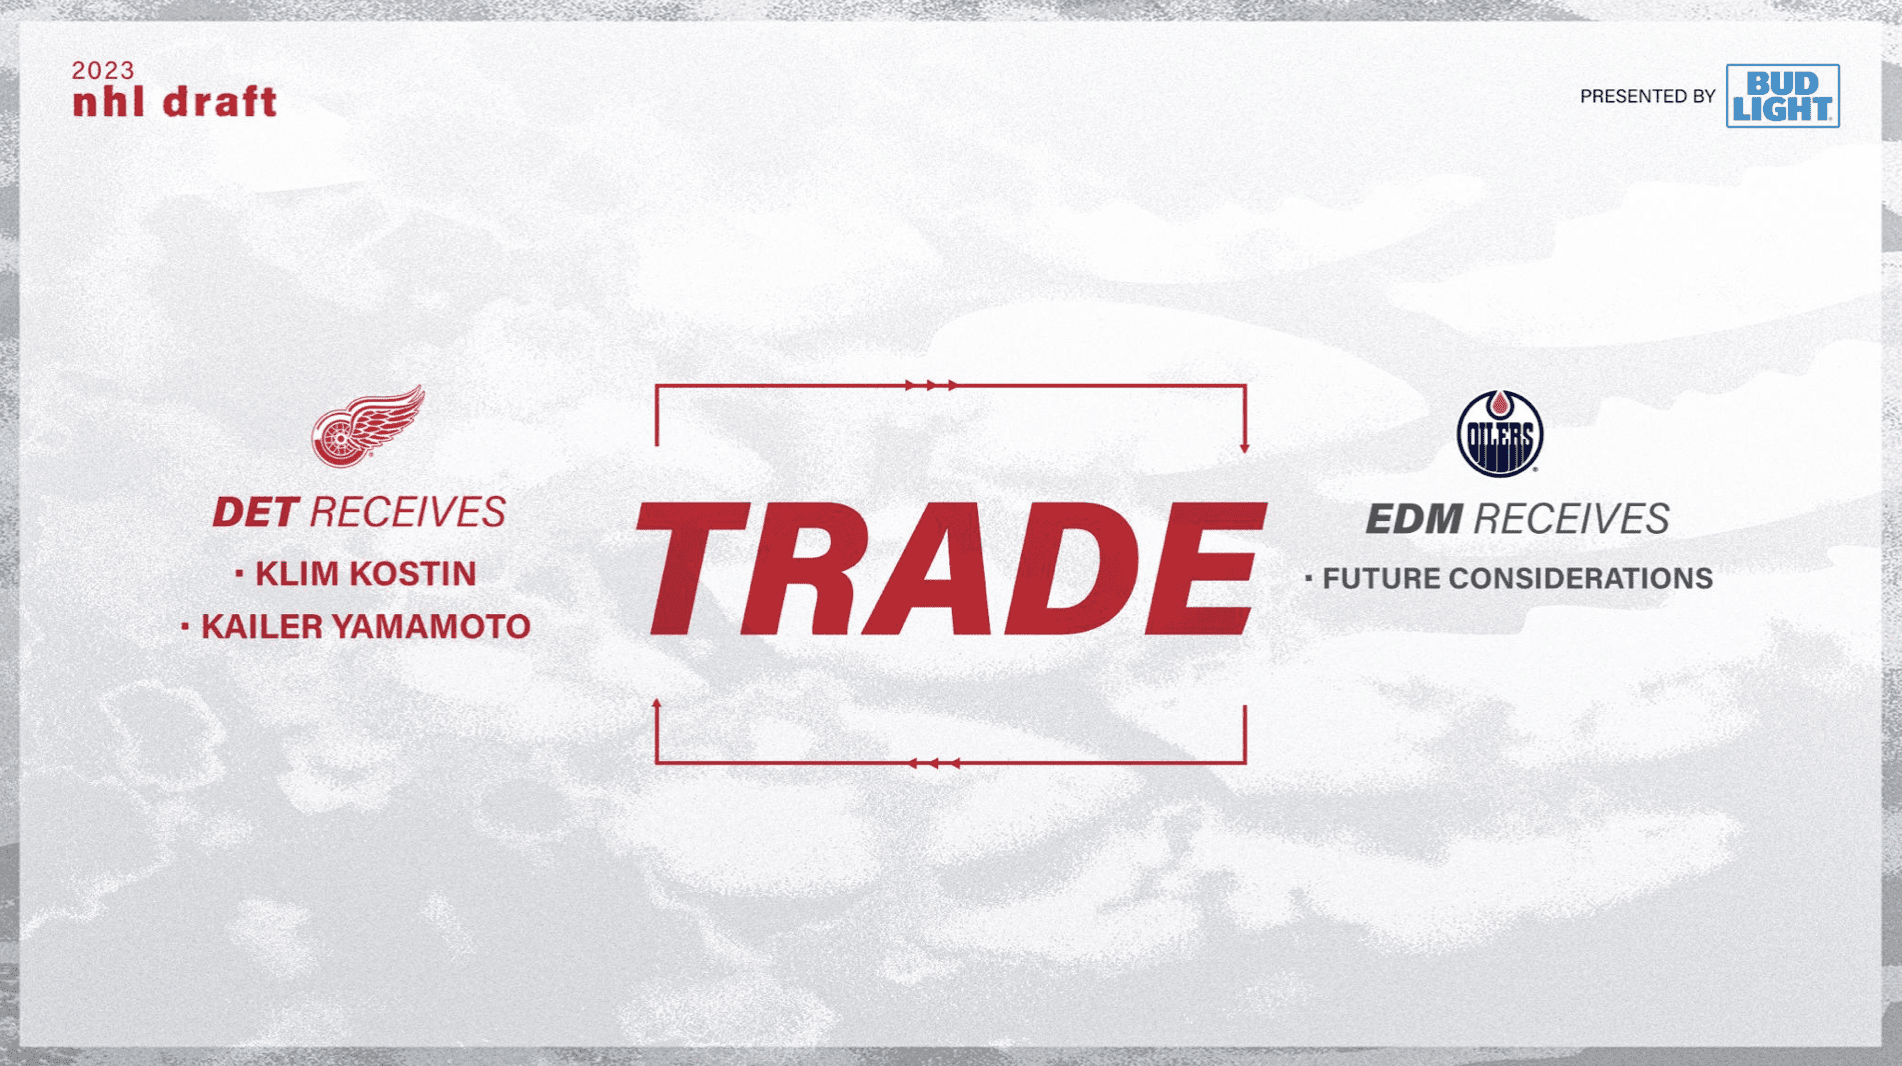 Oilers Trade Kailer Yamamoto, Klim Kostin to Red Wings - The Hockey News